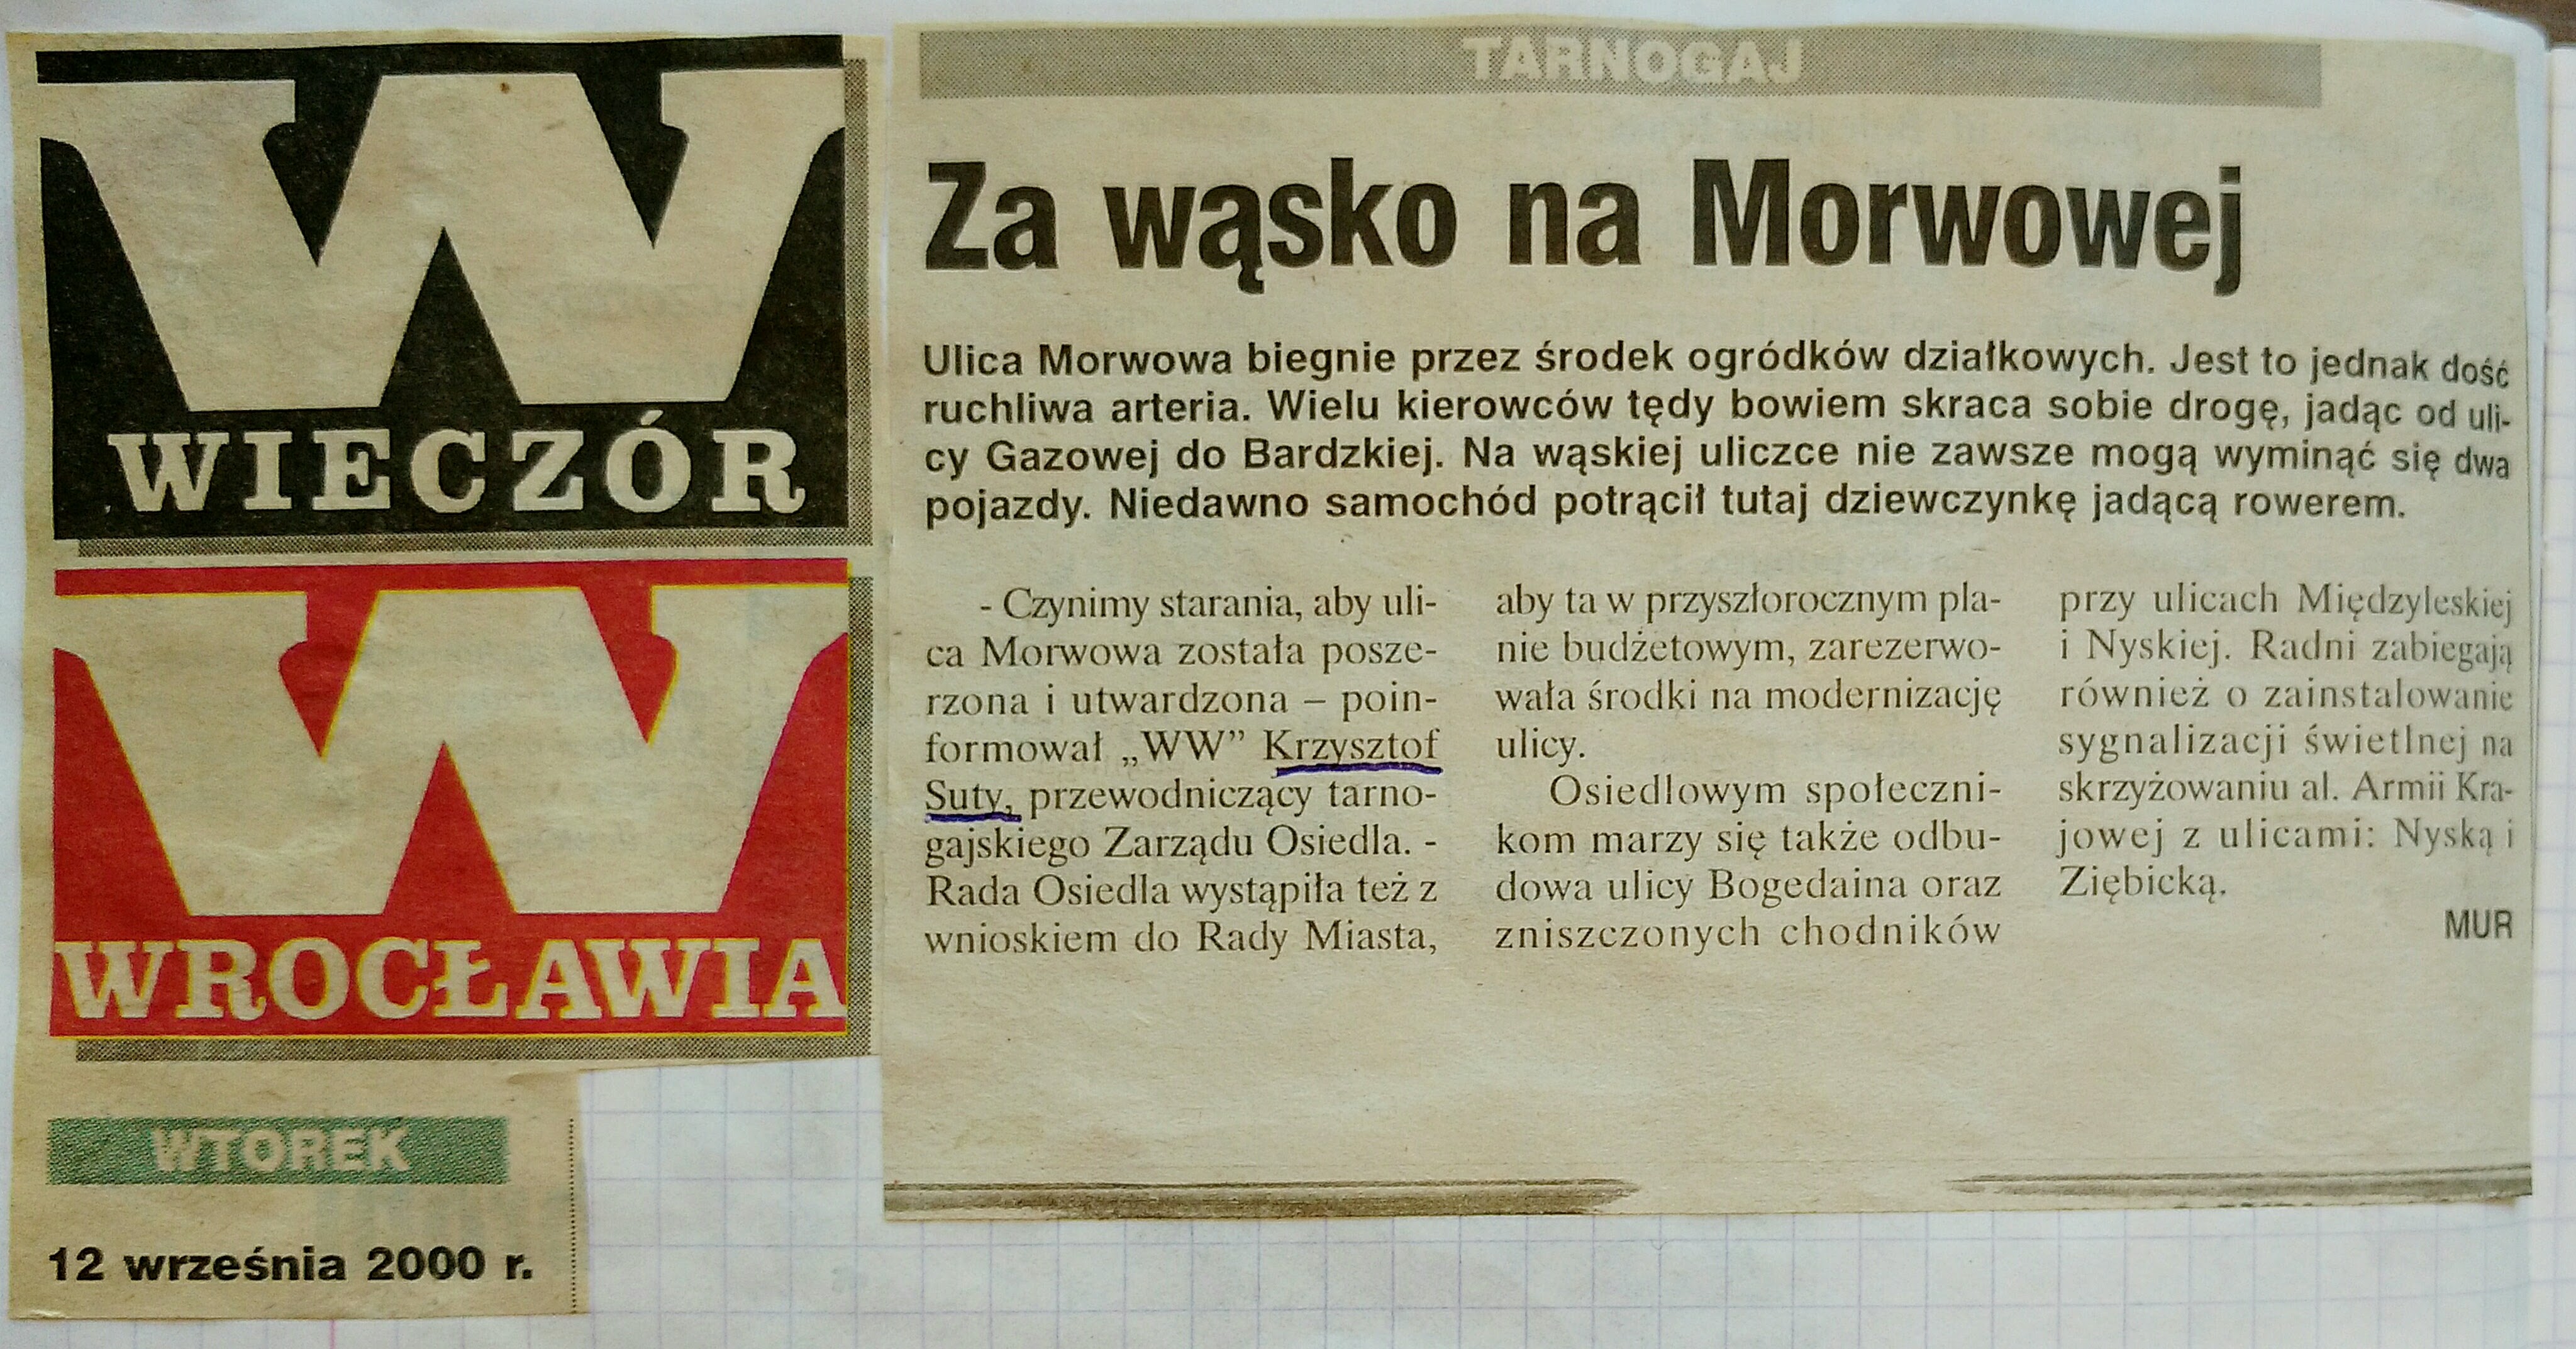 24 12 Września 2000 Wieczór Wrocławia